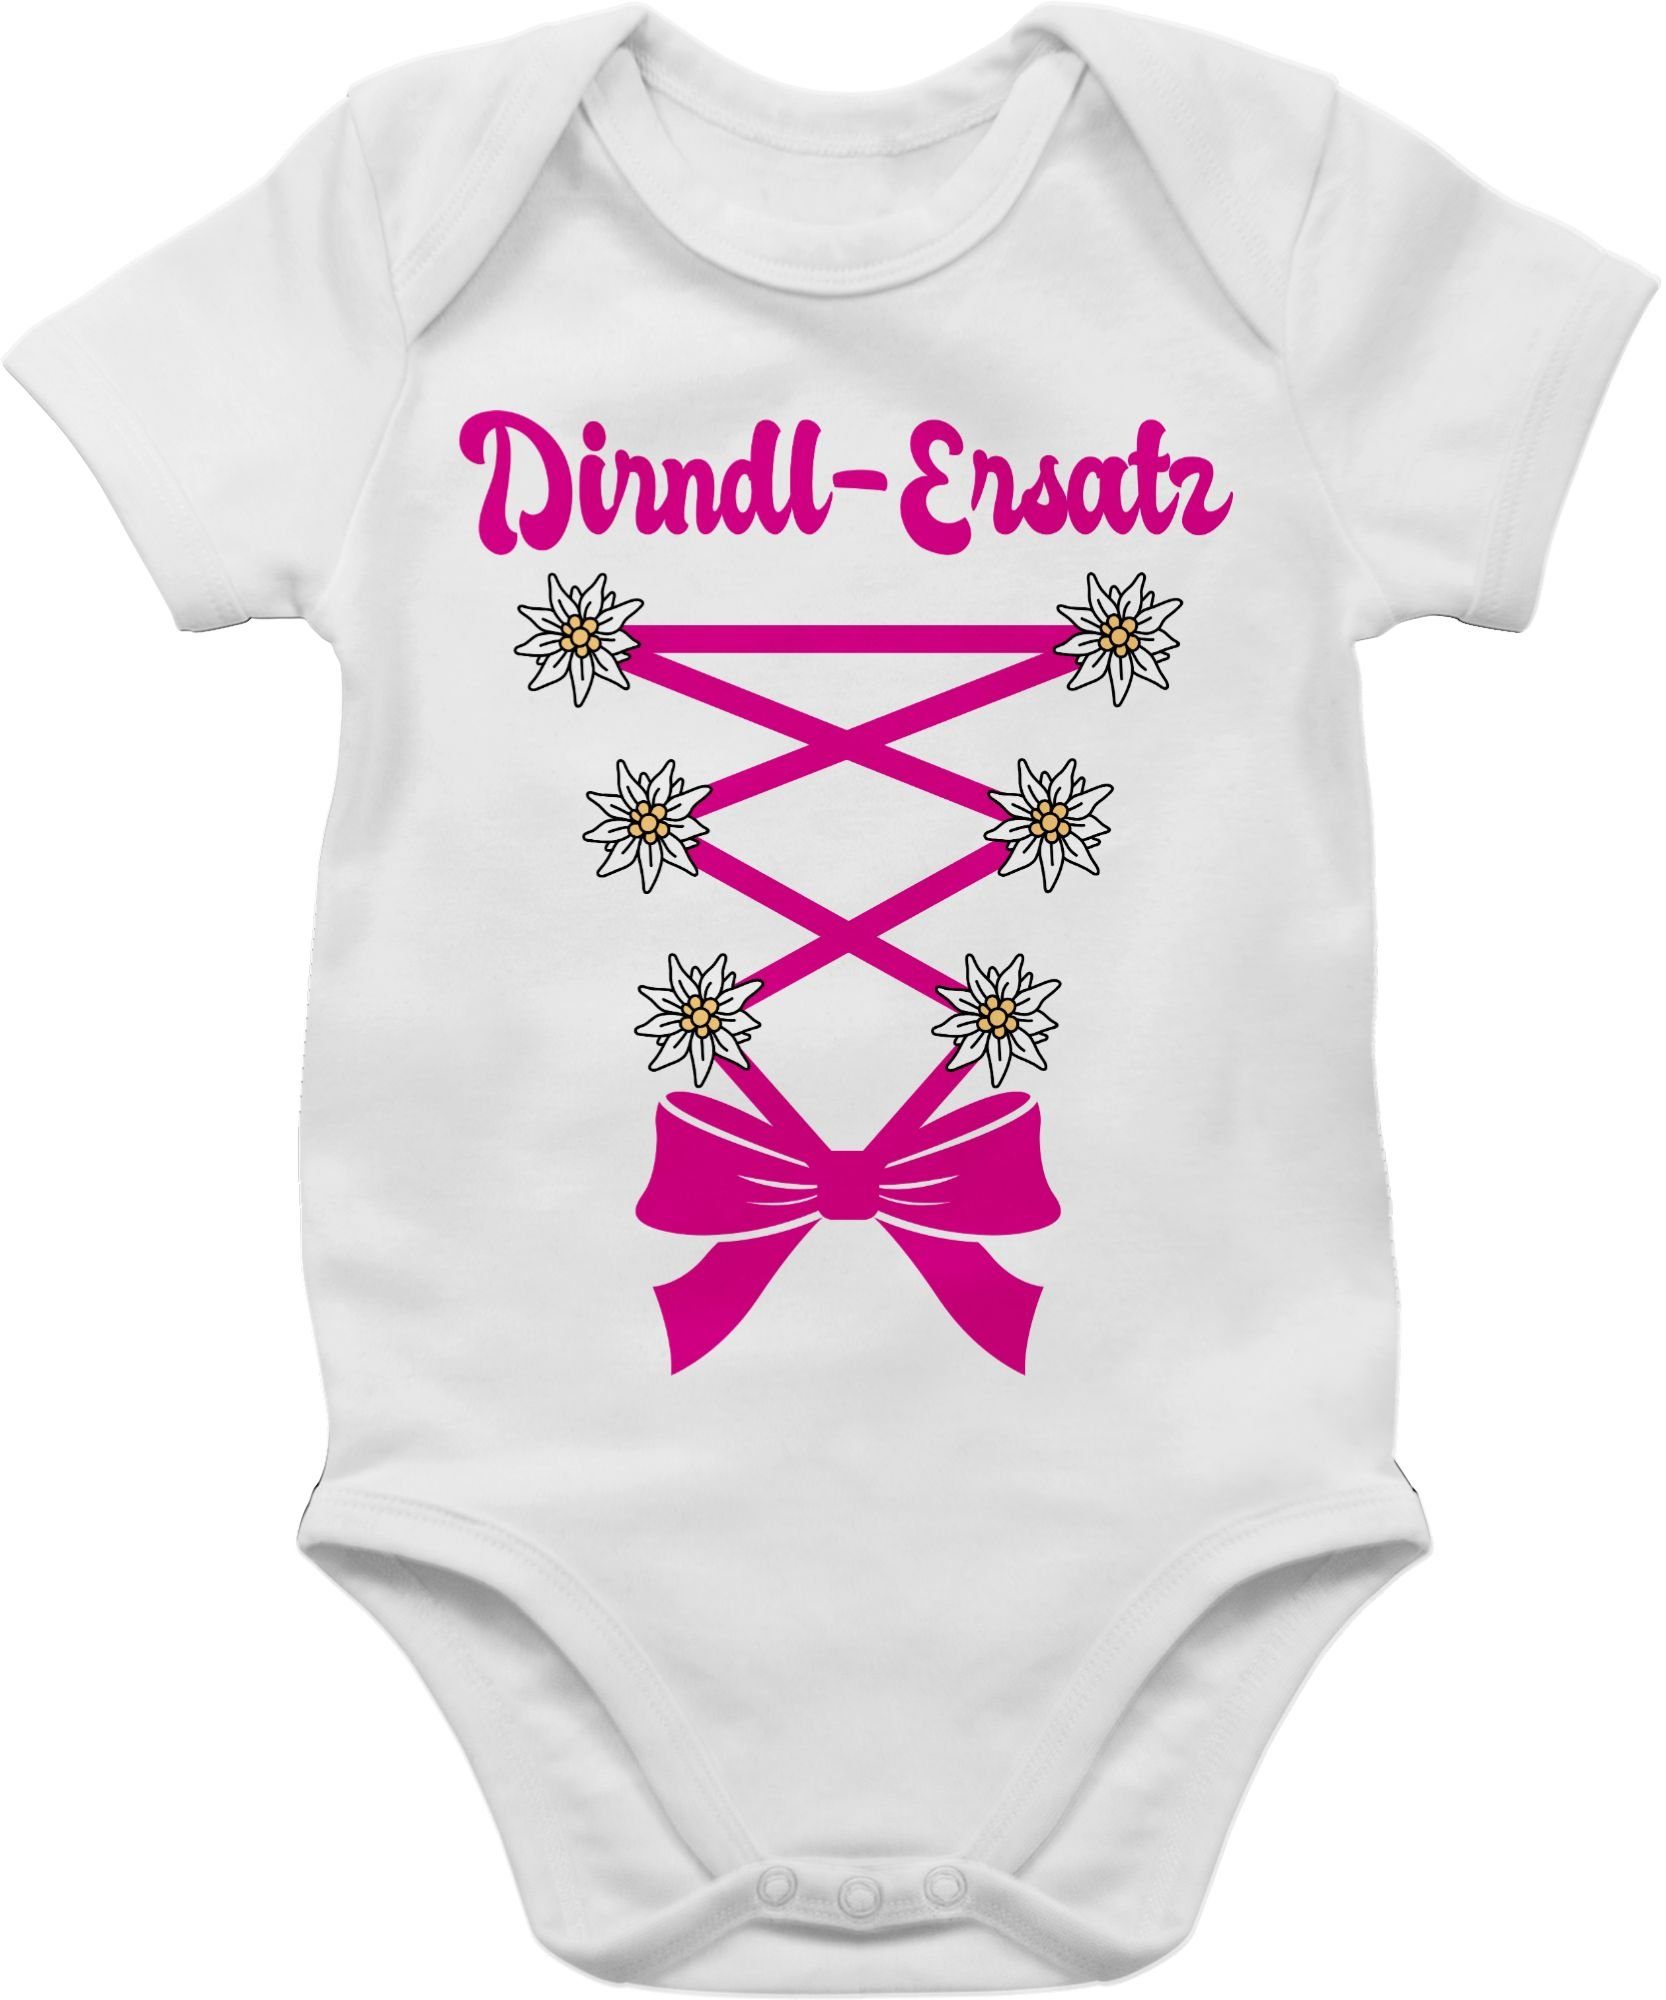 Korsage 1 Mode Dirndl-Ersatz - fuchsia Shirtbody Baby Outfit für Oktoberfest Weiß Shirtracer